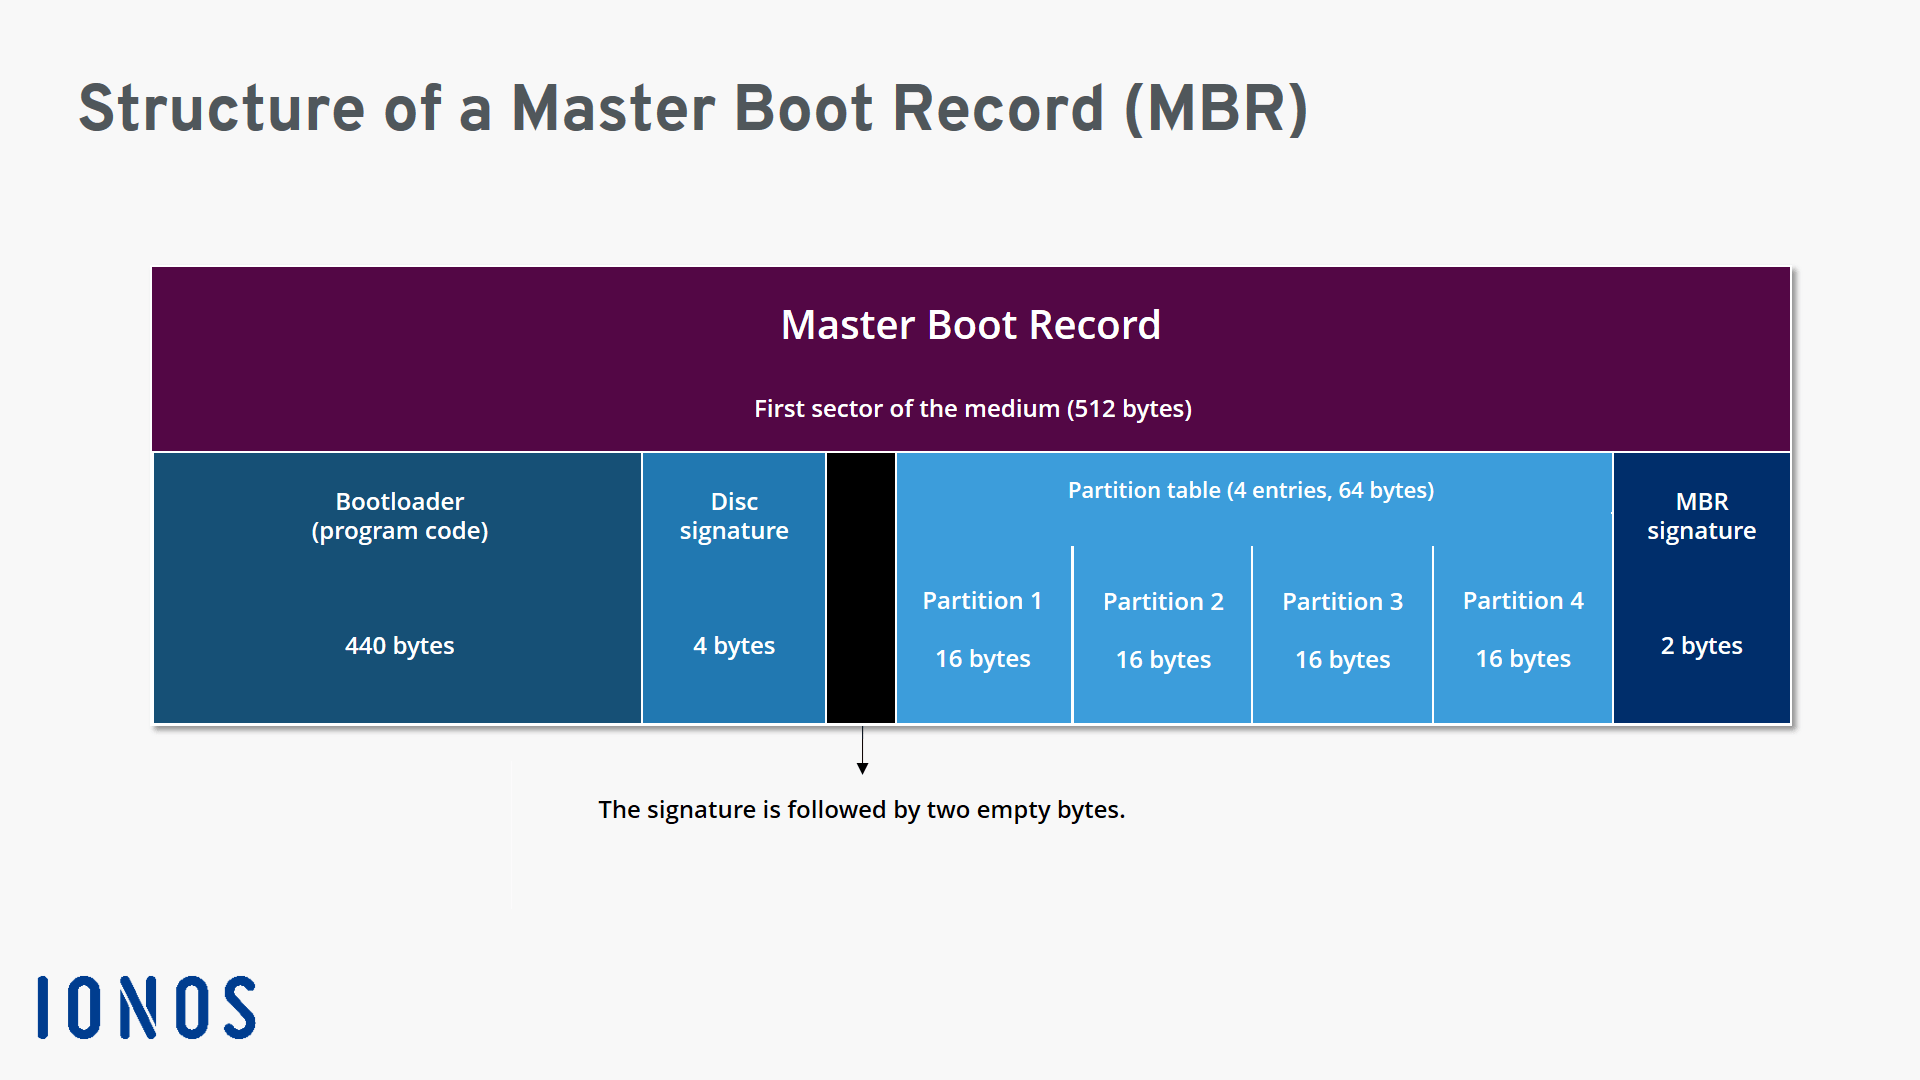 Rappresentazione grafica della struttura di un Master Boot Record